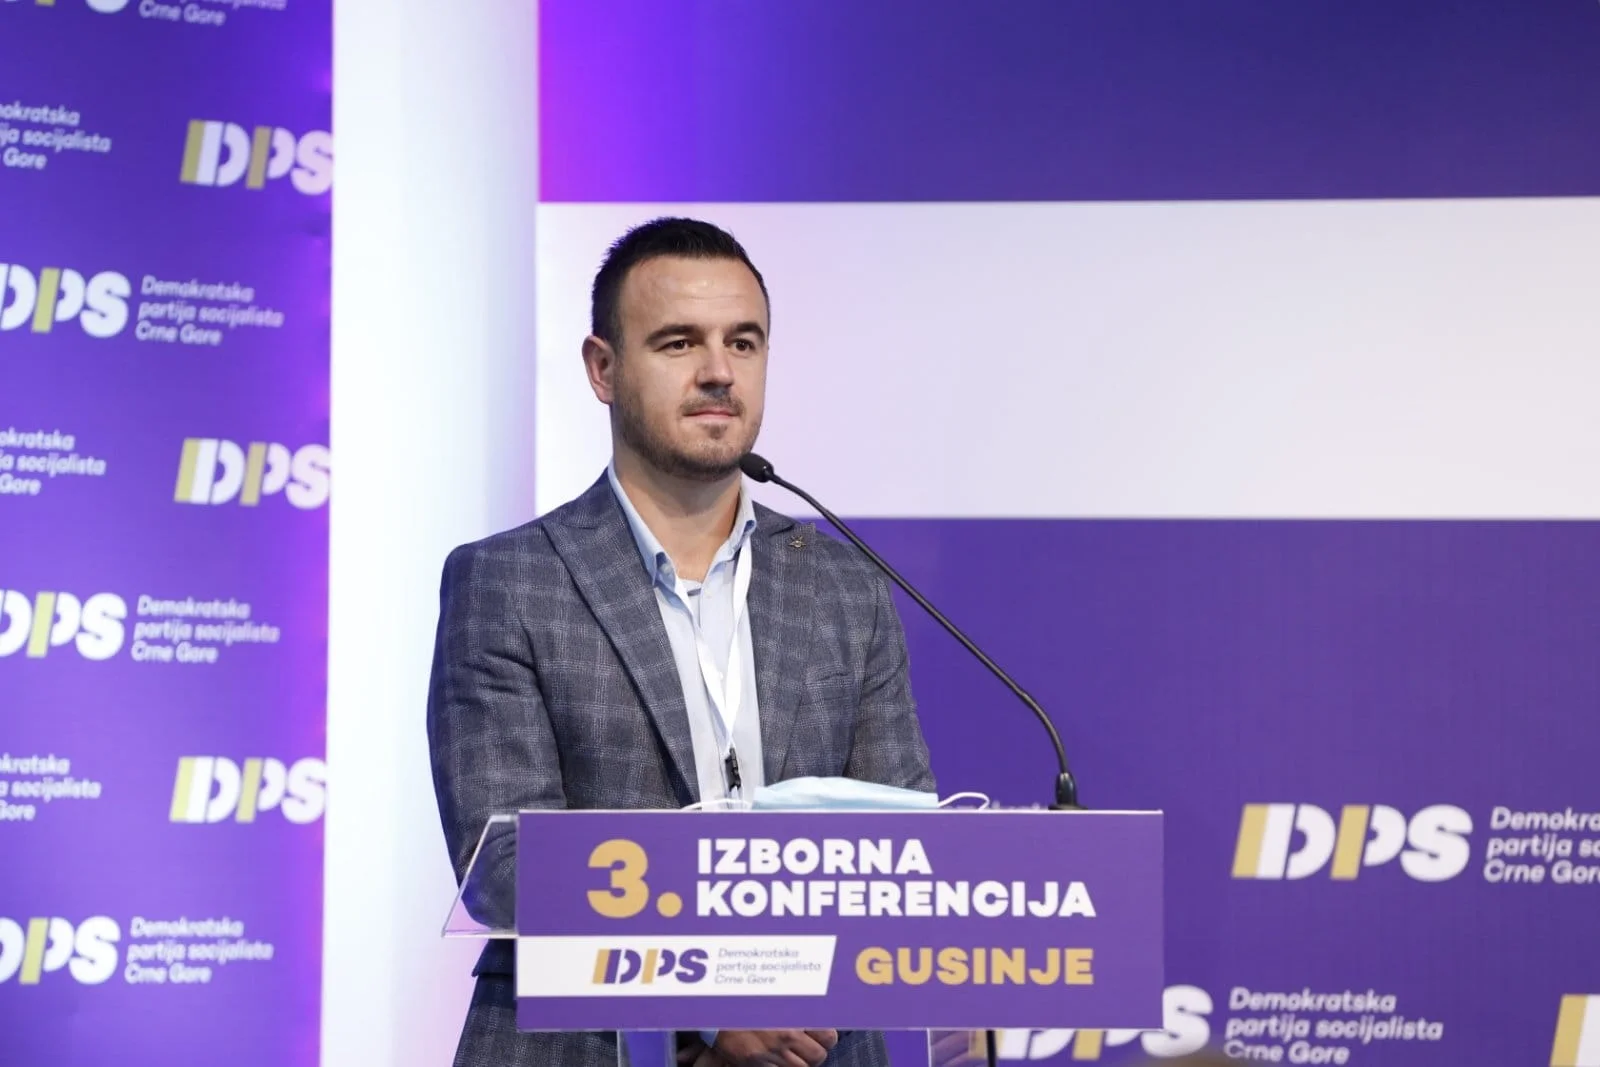 Damjanović: Apsolutna podrška slobodnim ljudima koji izražavaju protest zbog partijskog zapošljavanja u Gusinju, izborićemo se za naše mlade ljude